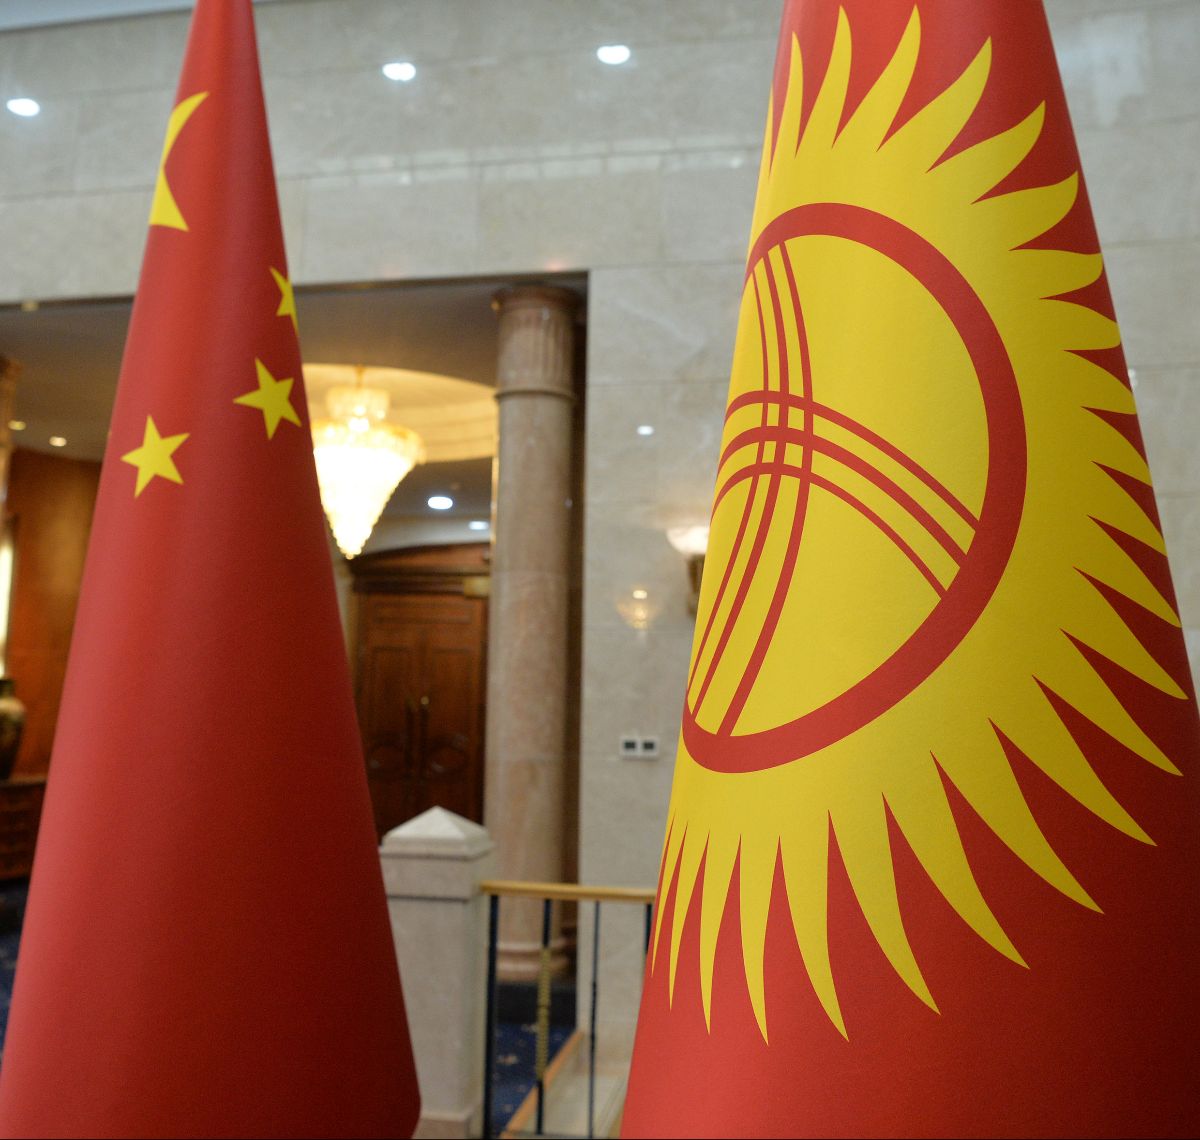 Президент Кыргызской Республики Сооронбай Жээнбеков принял члена Государственного совета, министра иностранных дел Китайской Народной Республики Ван И, который посетил Кыргызстан с официальным визитом.